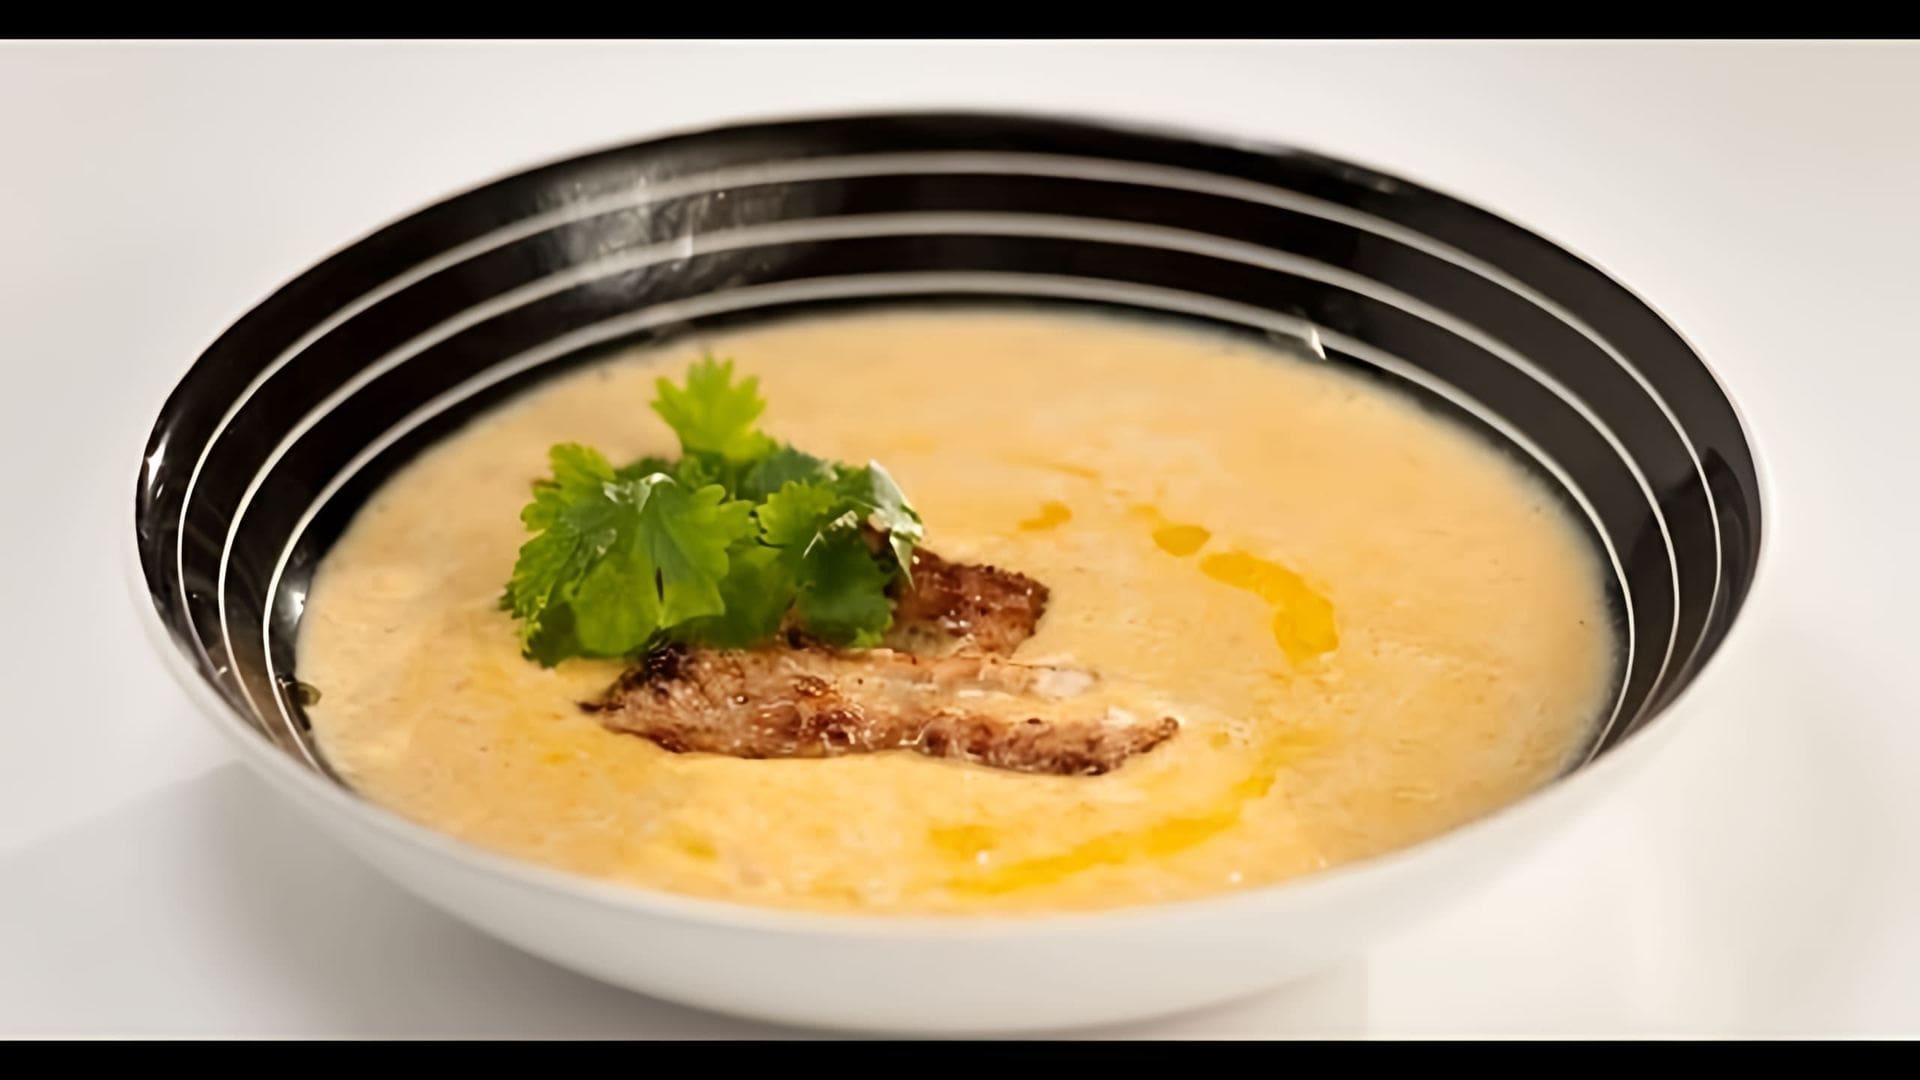 "Кукурузный крем-суп с индейкой: рецепт от шеф-повара" - это видео-ролик, в котором шеф-повар демонстрирует процесс приготовления вкусного и питательного кукурузного крем-супа с индейкой